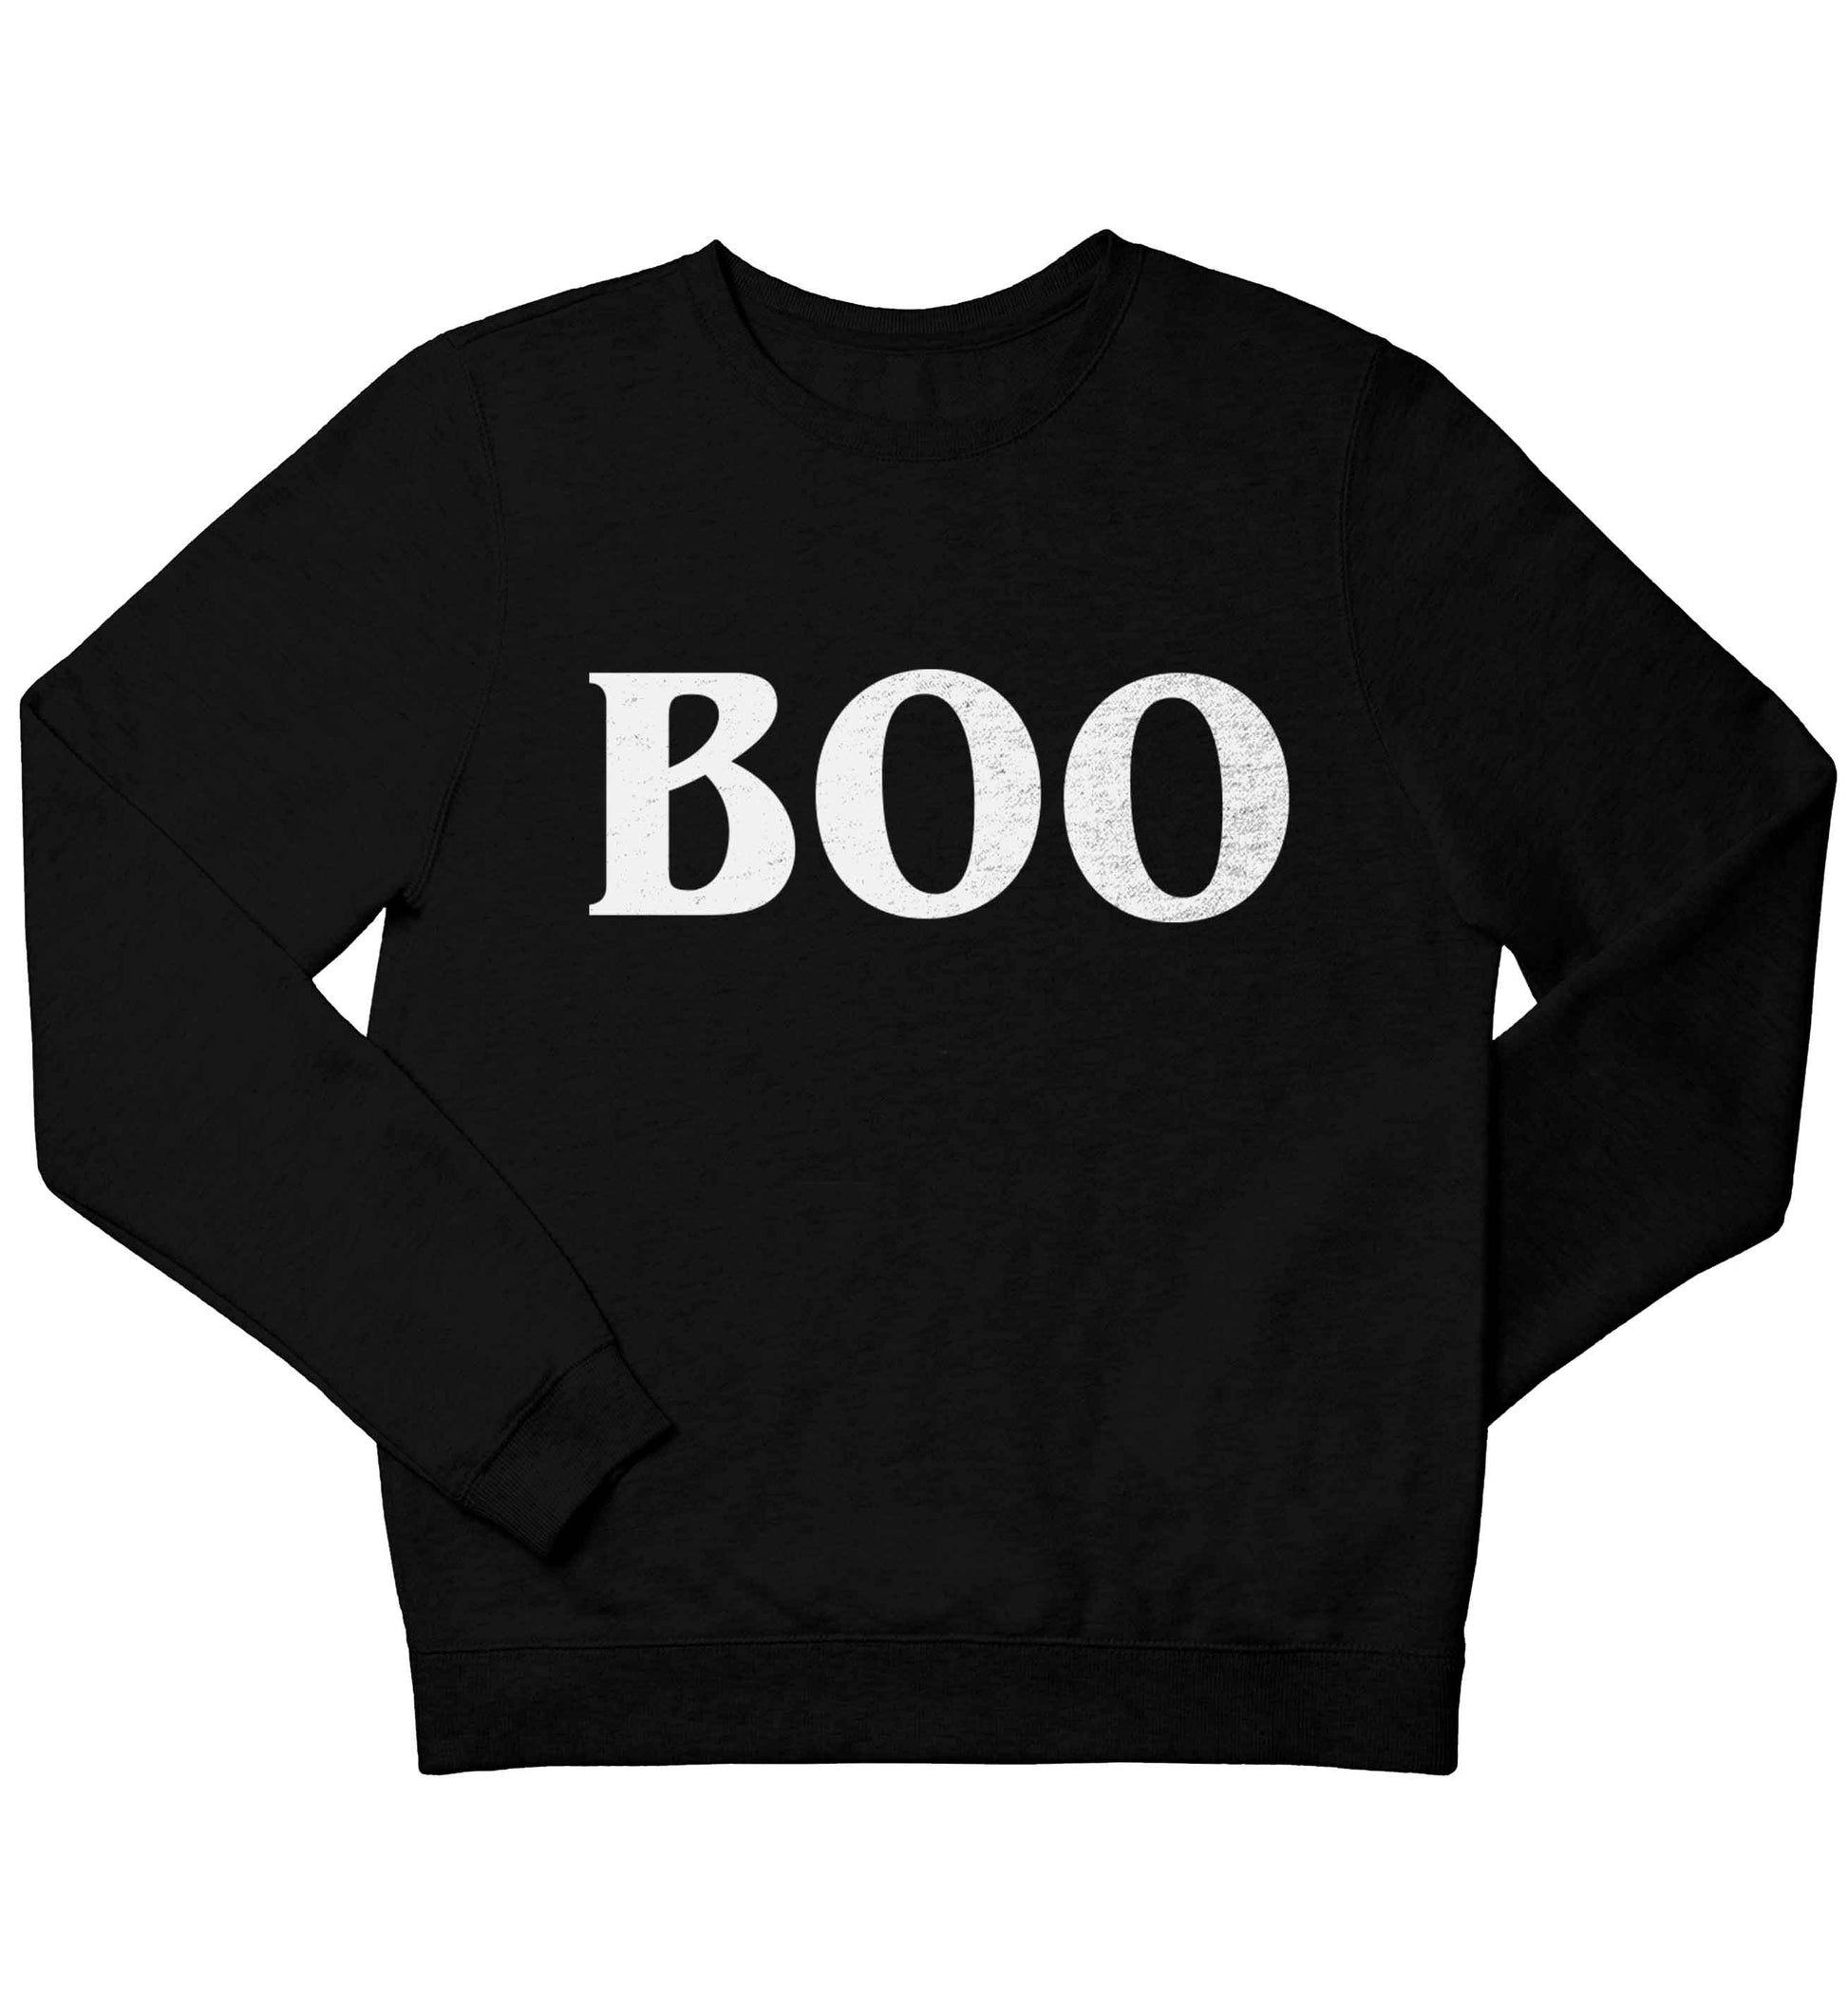 Boo children's black sweater 12-13 Years